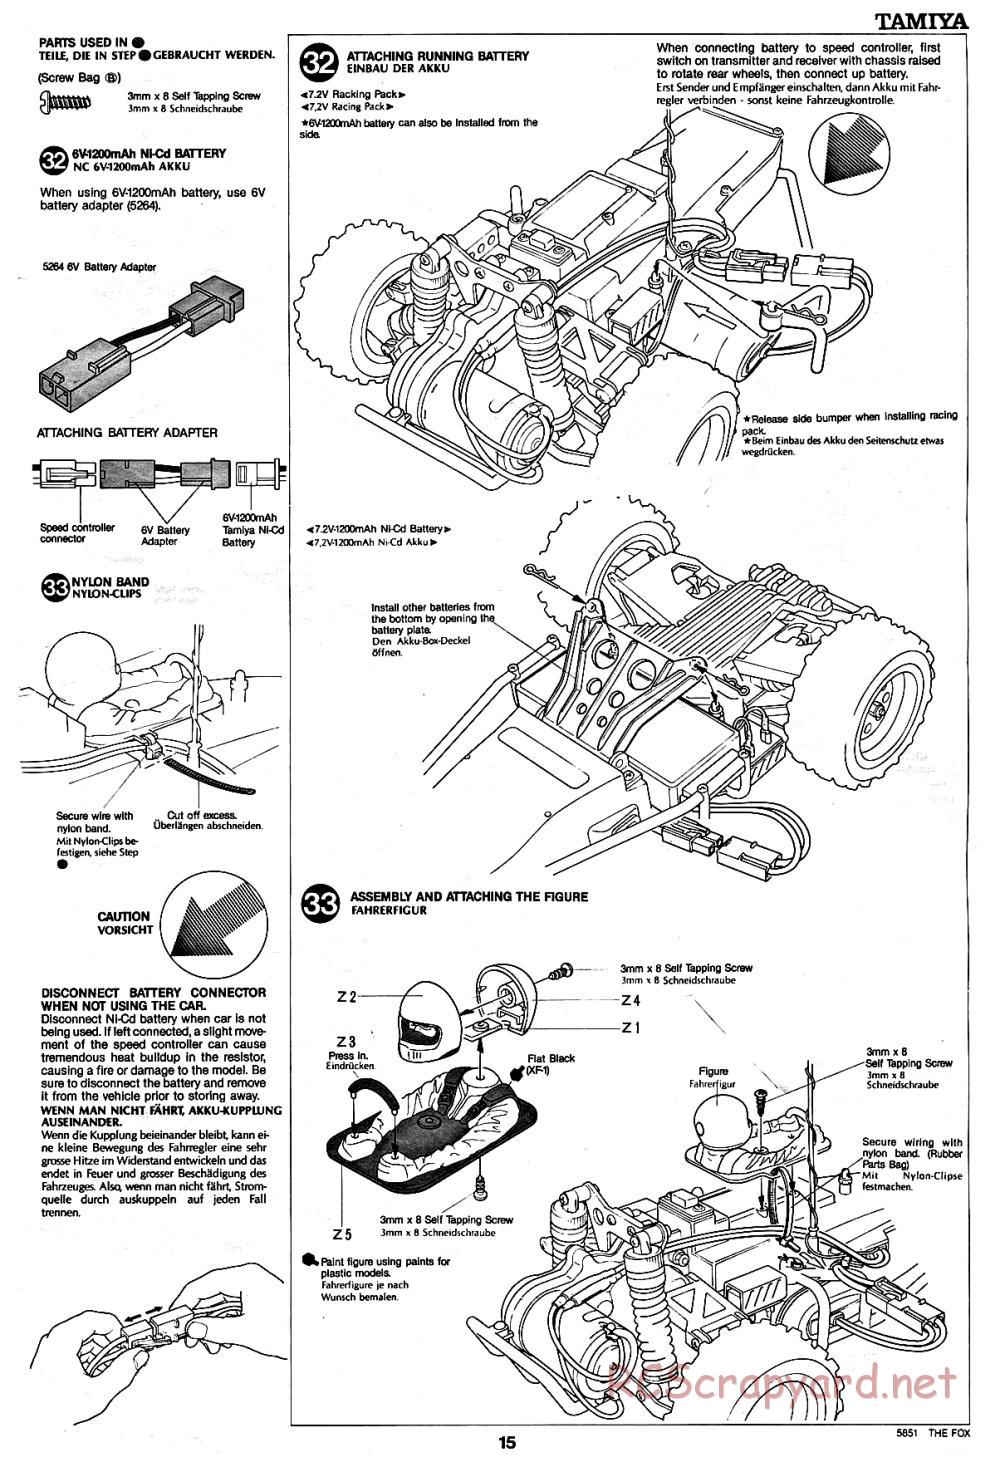 Tamiya - The Fox - 58051 - Manual - Page 15